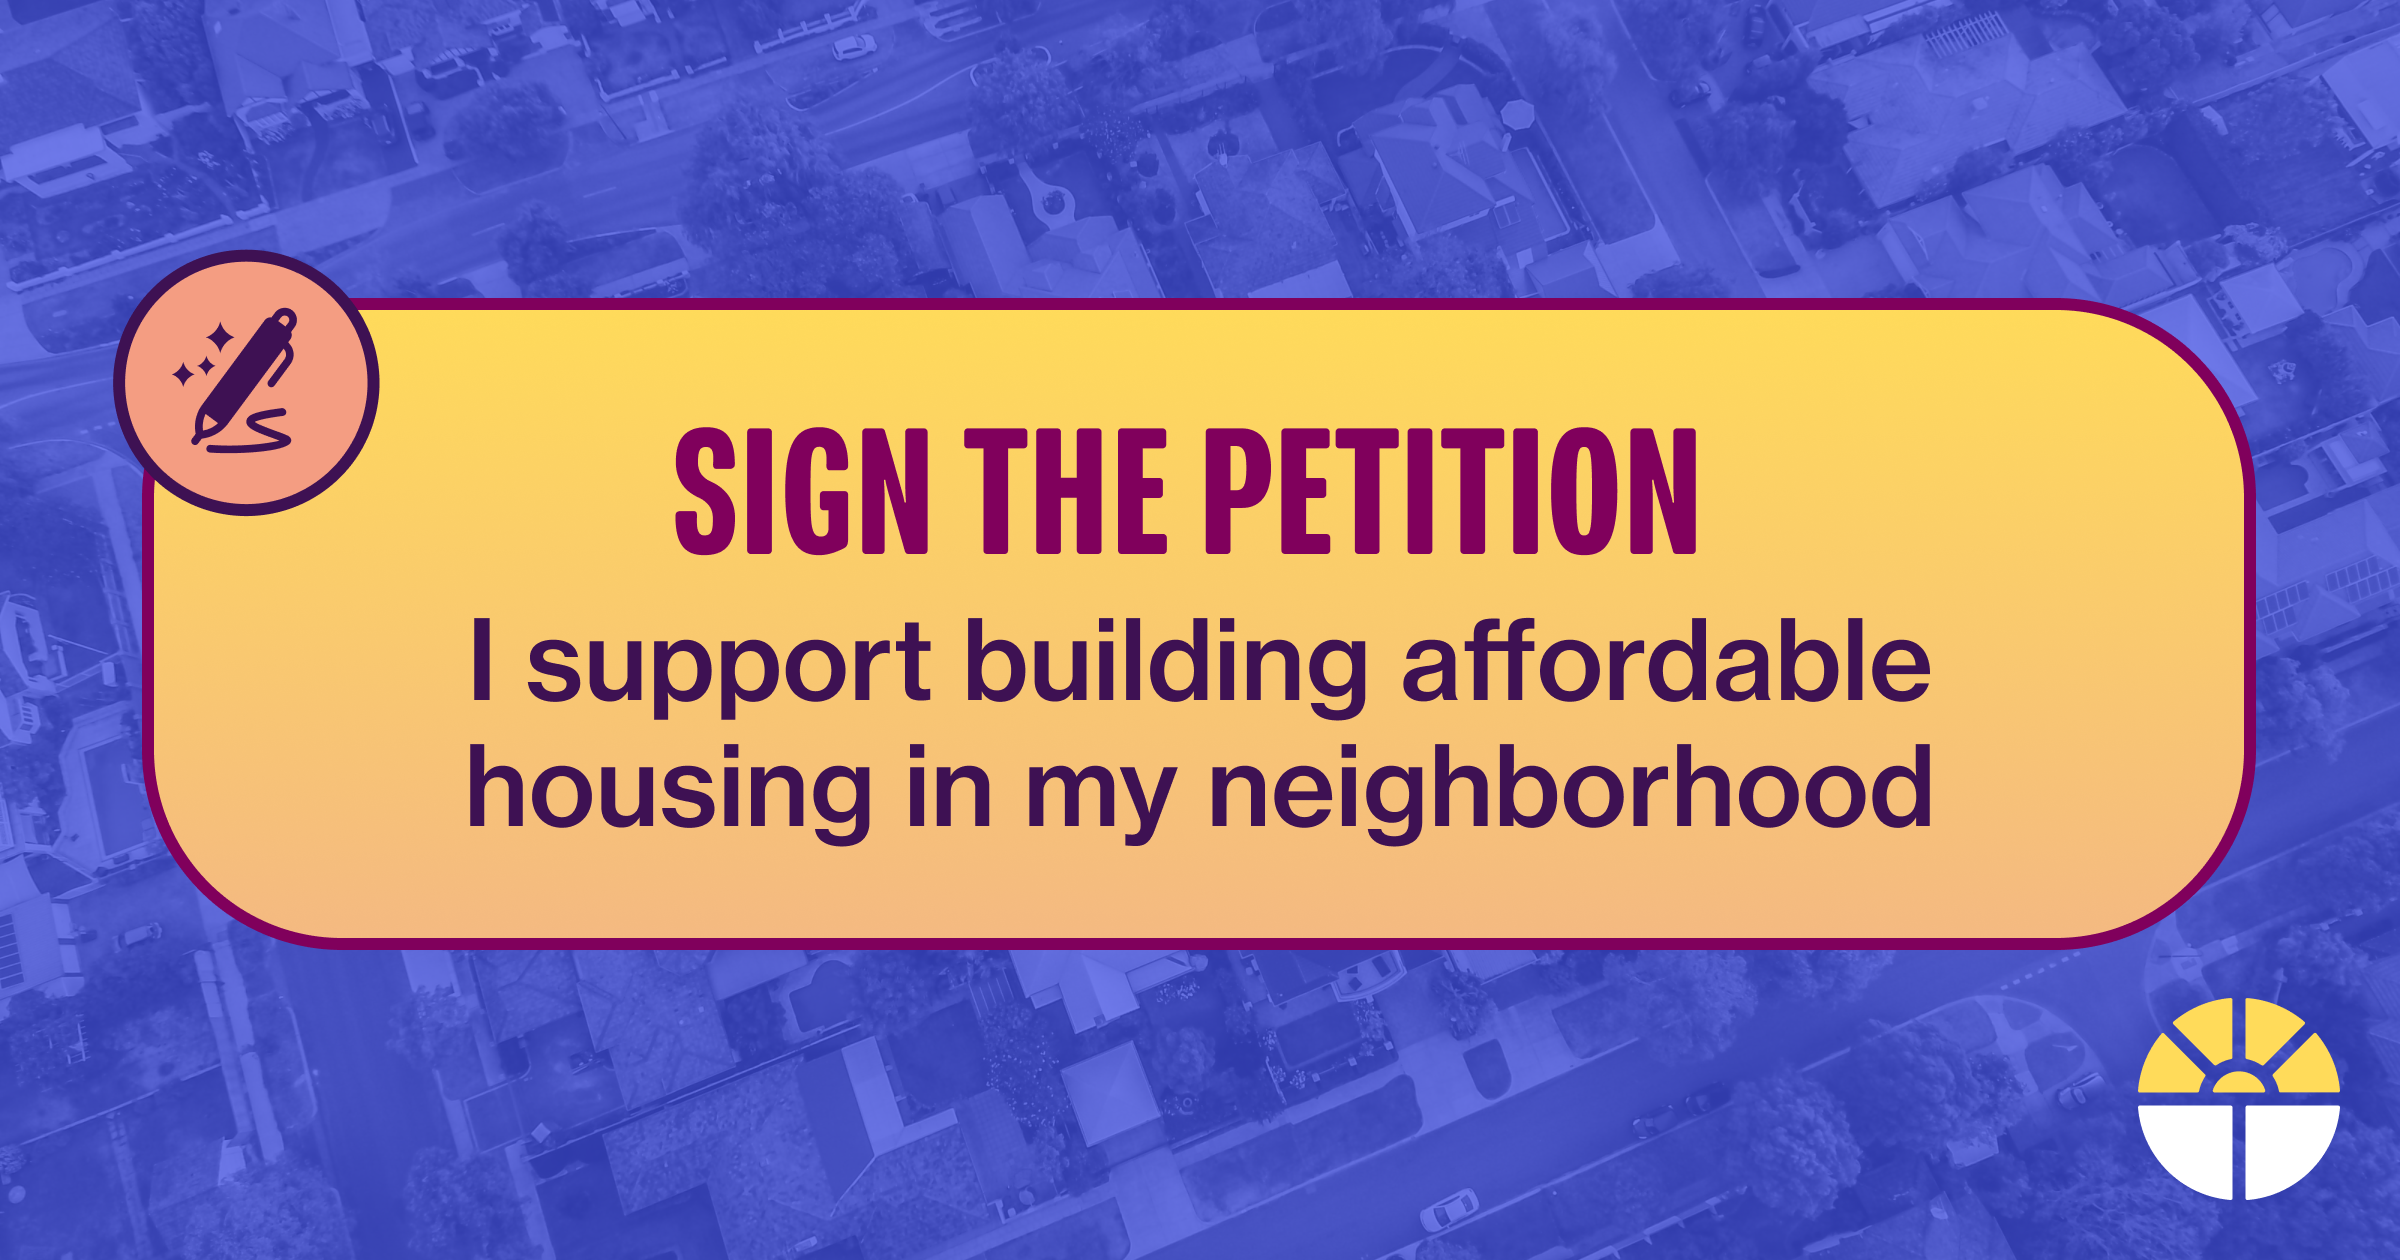 Firme la petición: Apoyo la construcción de viviendas asequibles en mi barrio